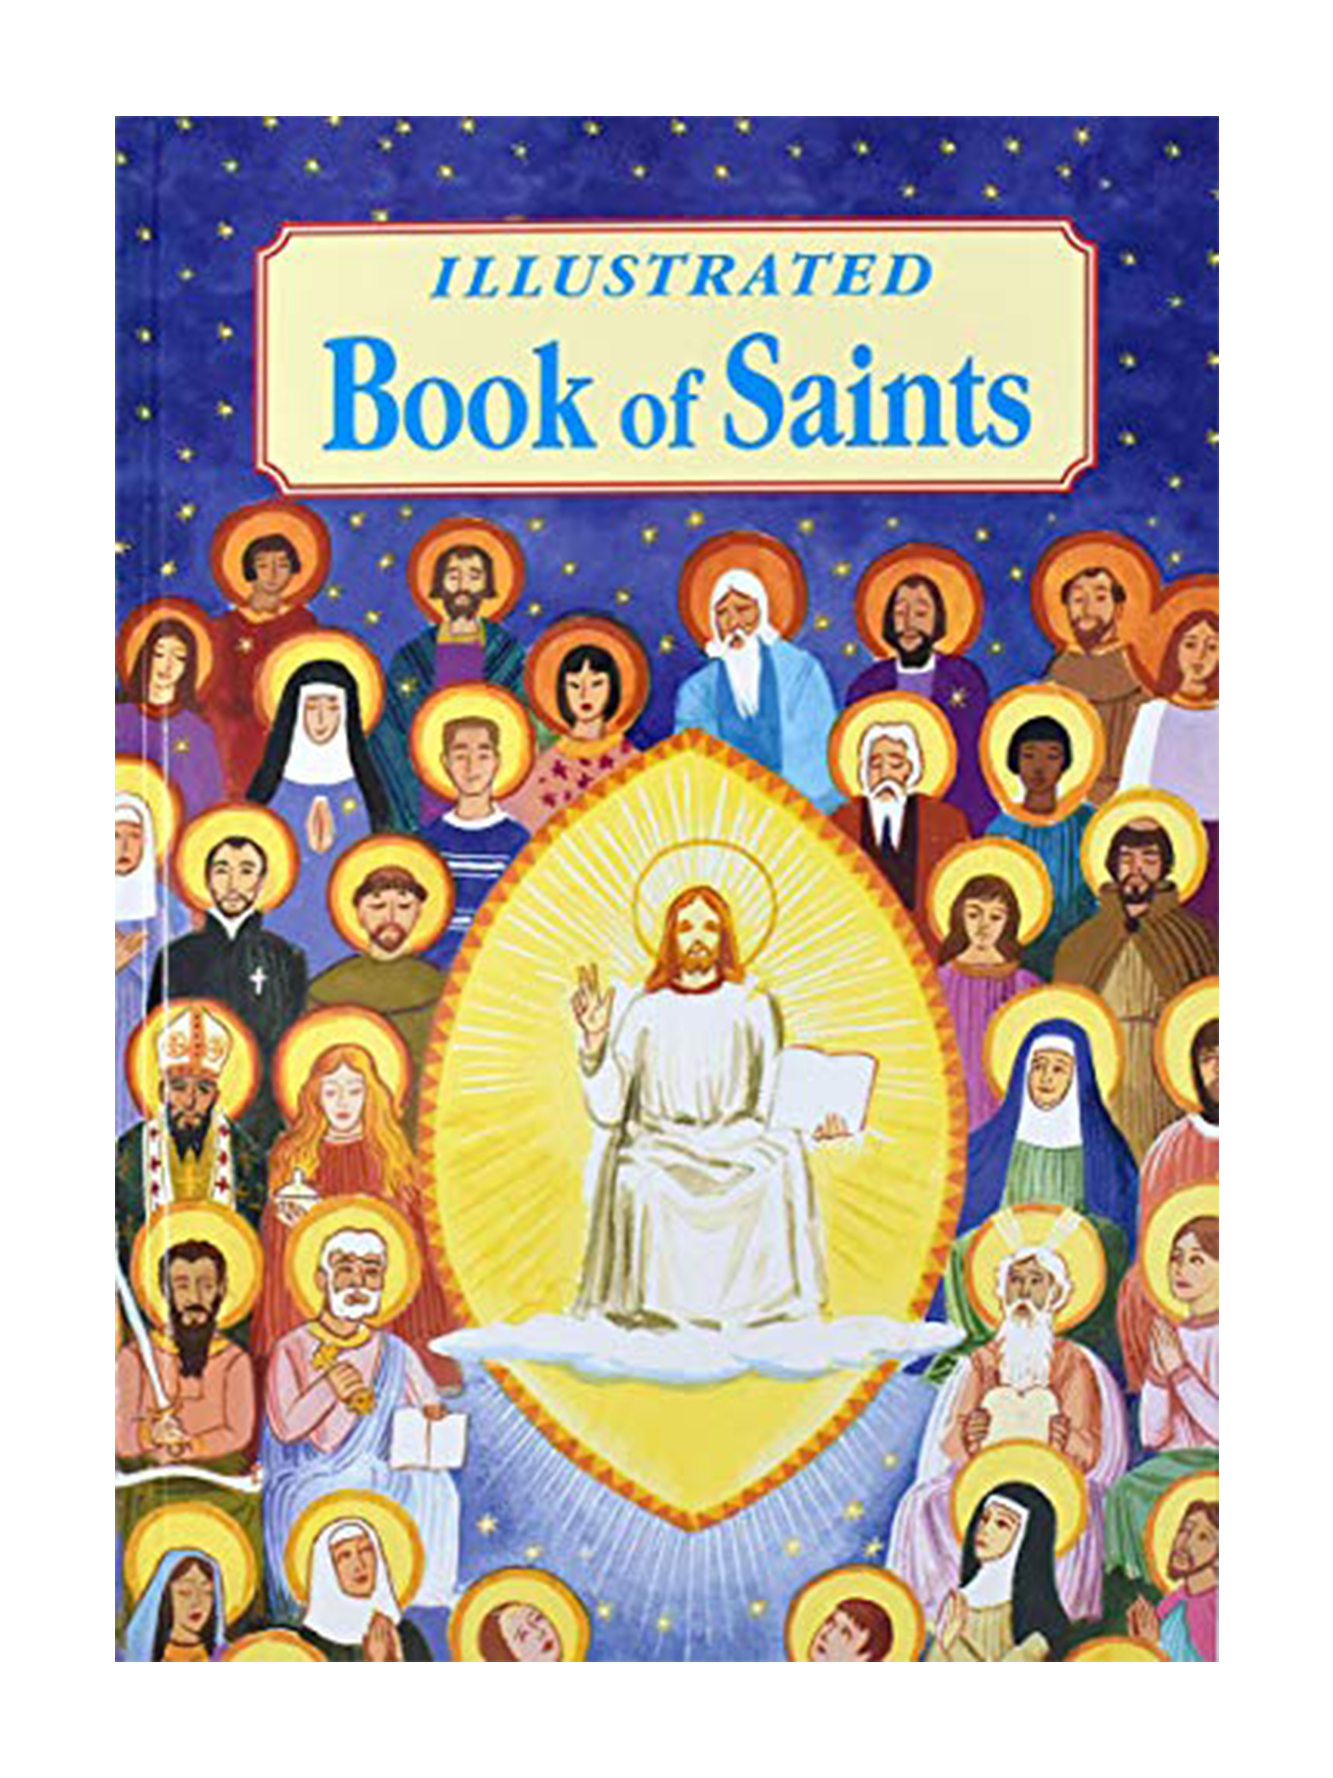 Books on Saints